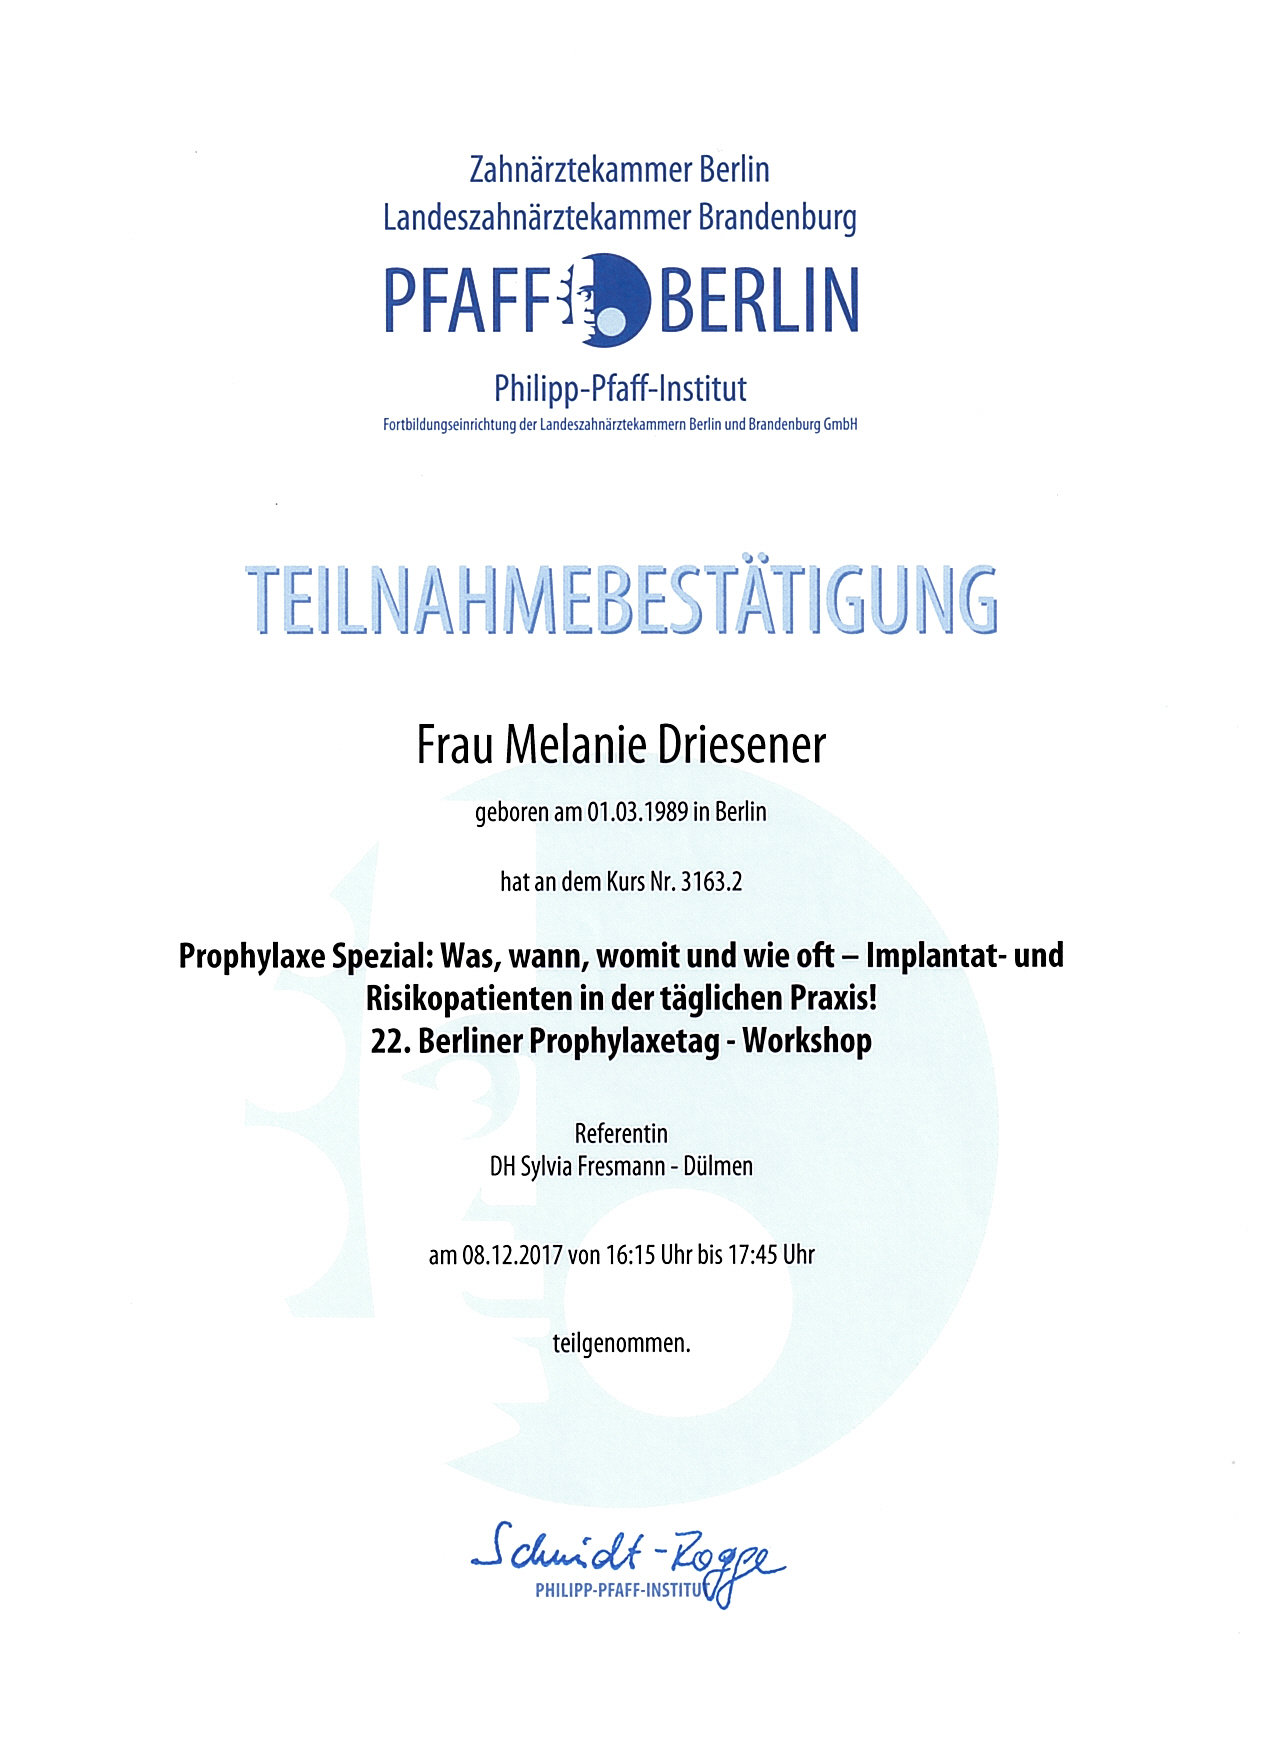 Melanie_Driesener 22. Berliner Prophylaxetag